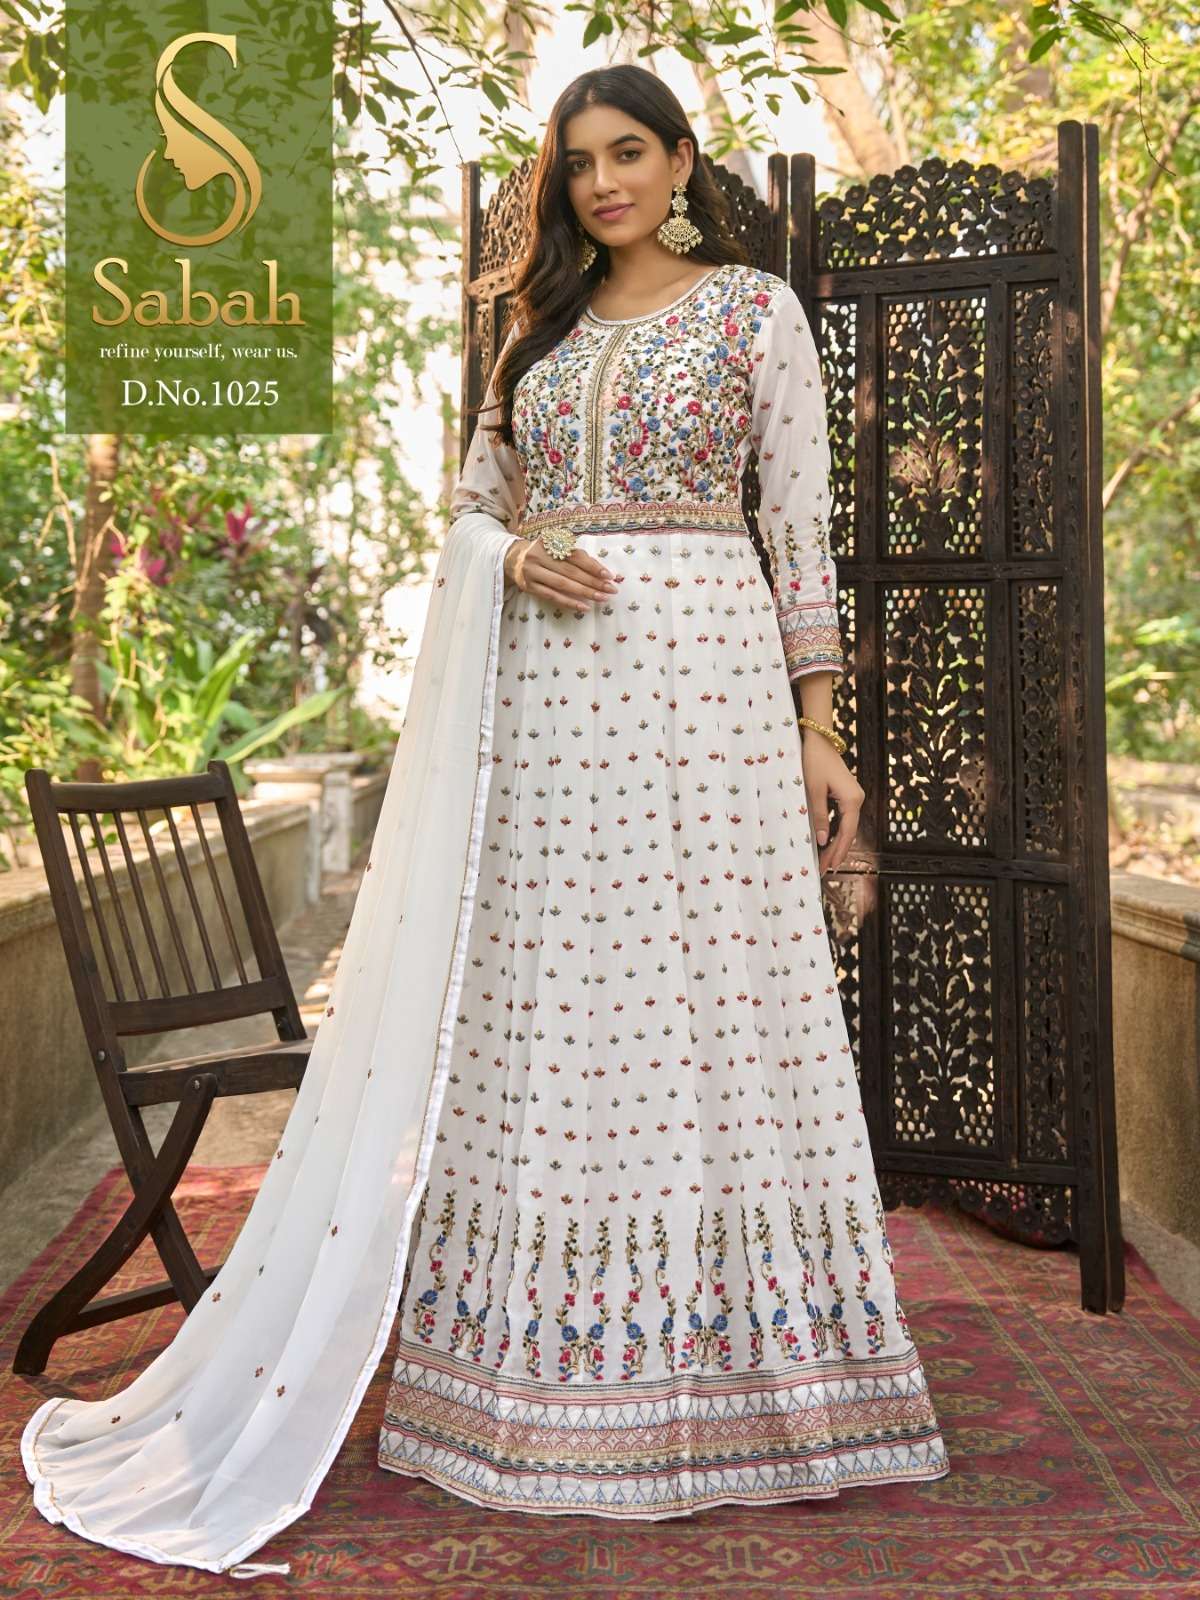 Fk Fashion Sabah zaina 1025 Pakistani Fancy designer Suit Collection